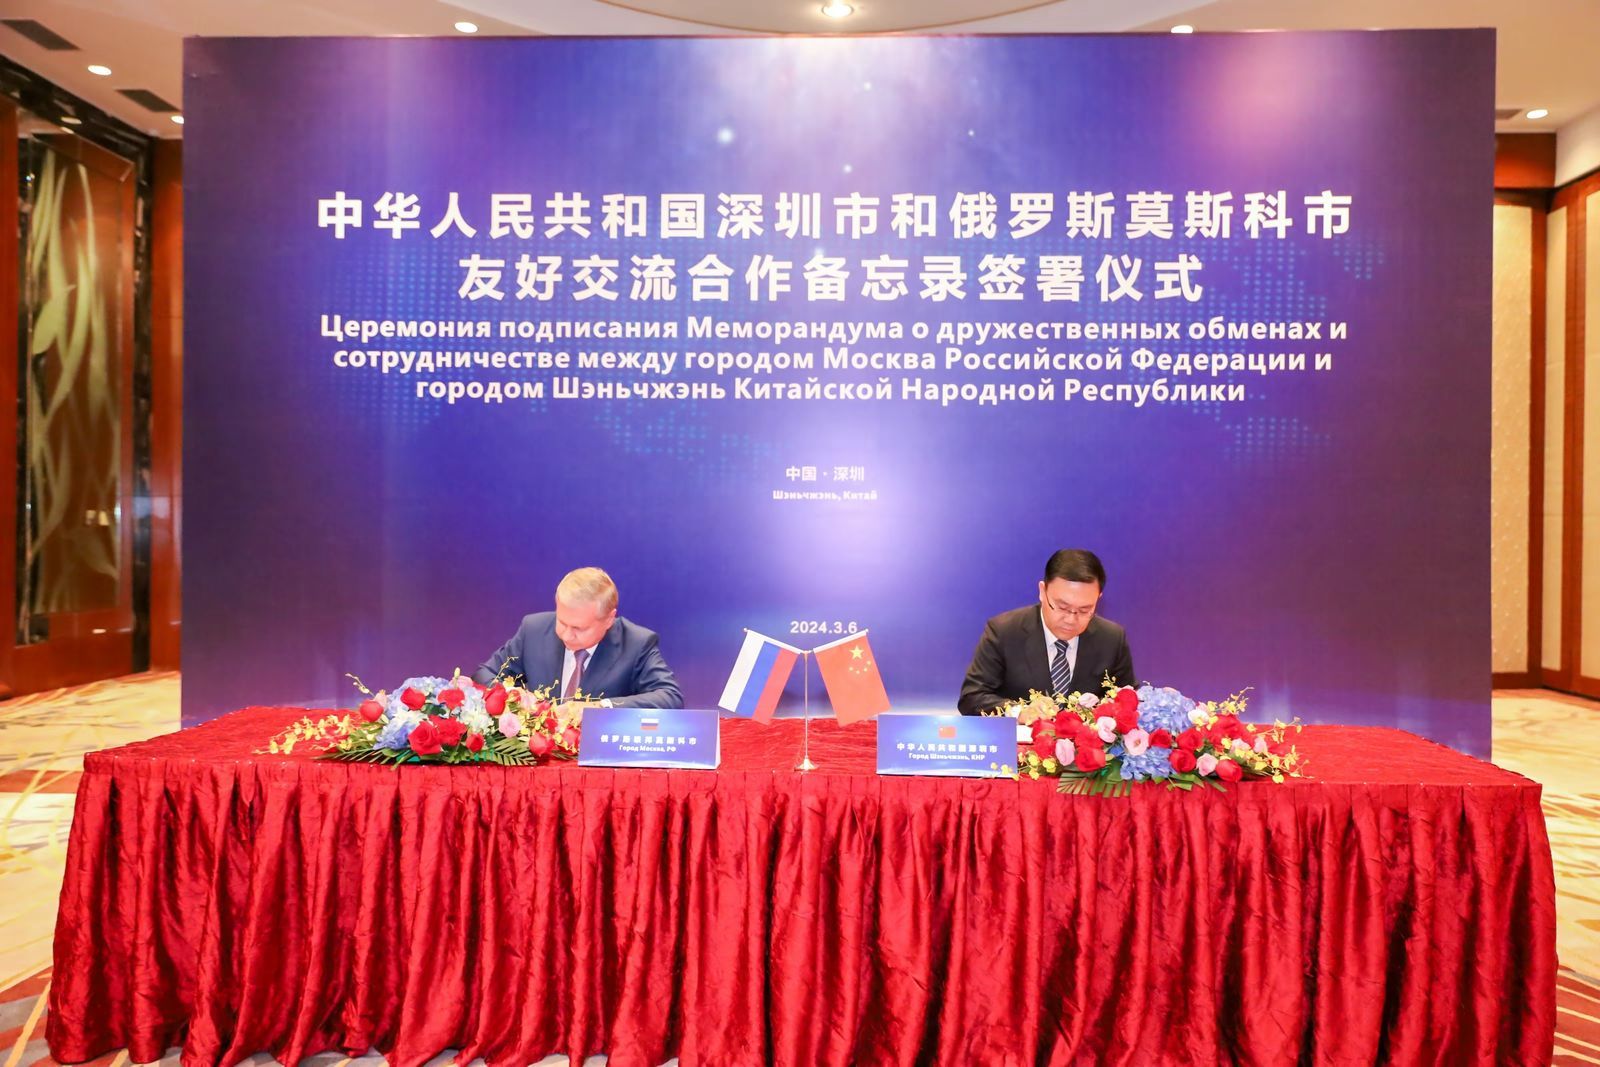 Правительство Москвы подписало меморандум о сотрудничестве и взаимопонимании с китайским Шэньчжэнем